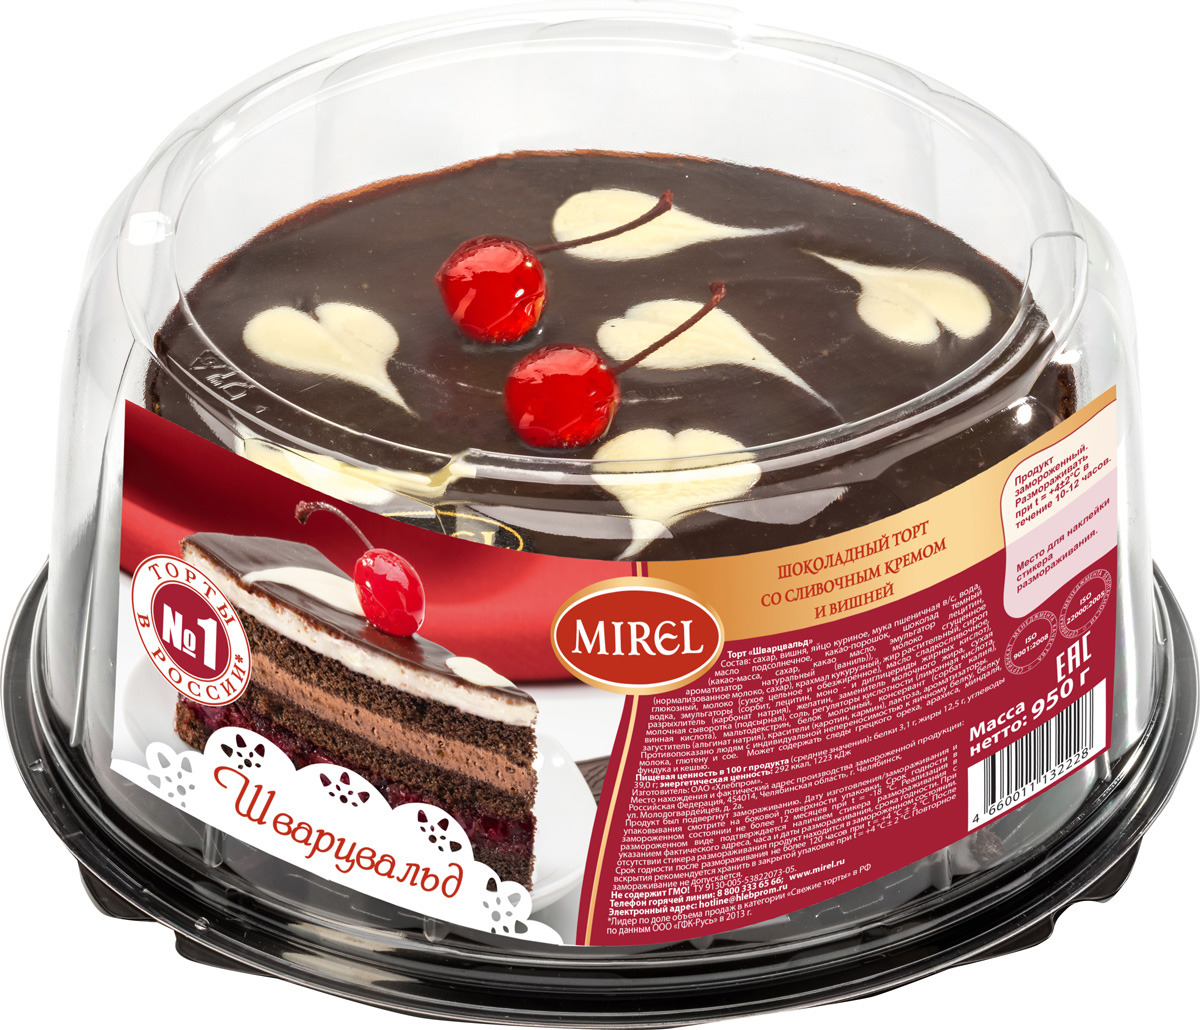 Торт Мирель ягодный мусс